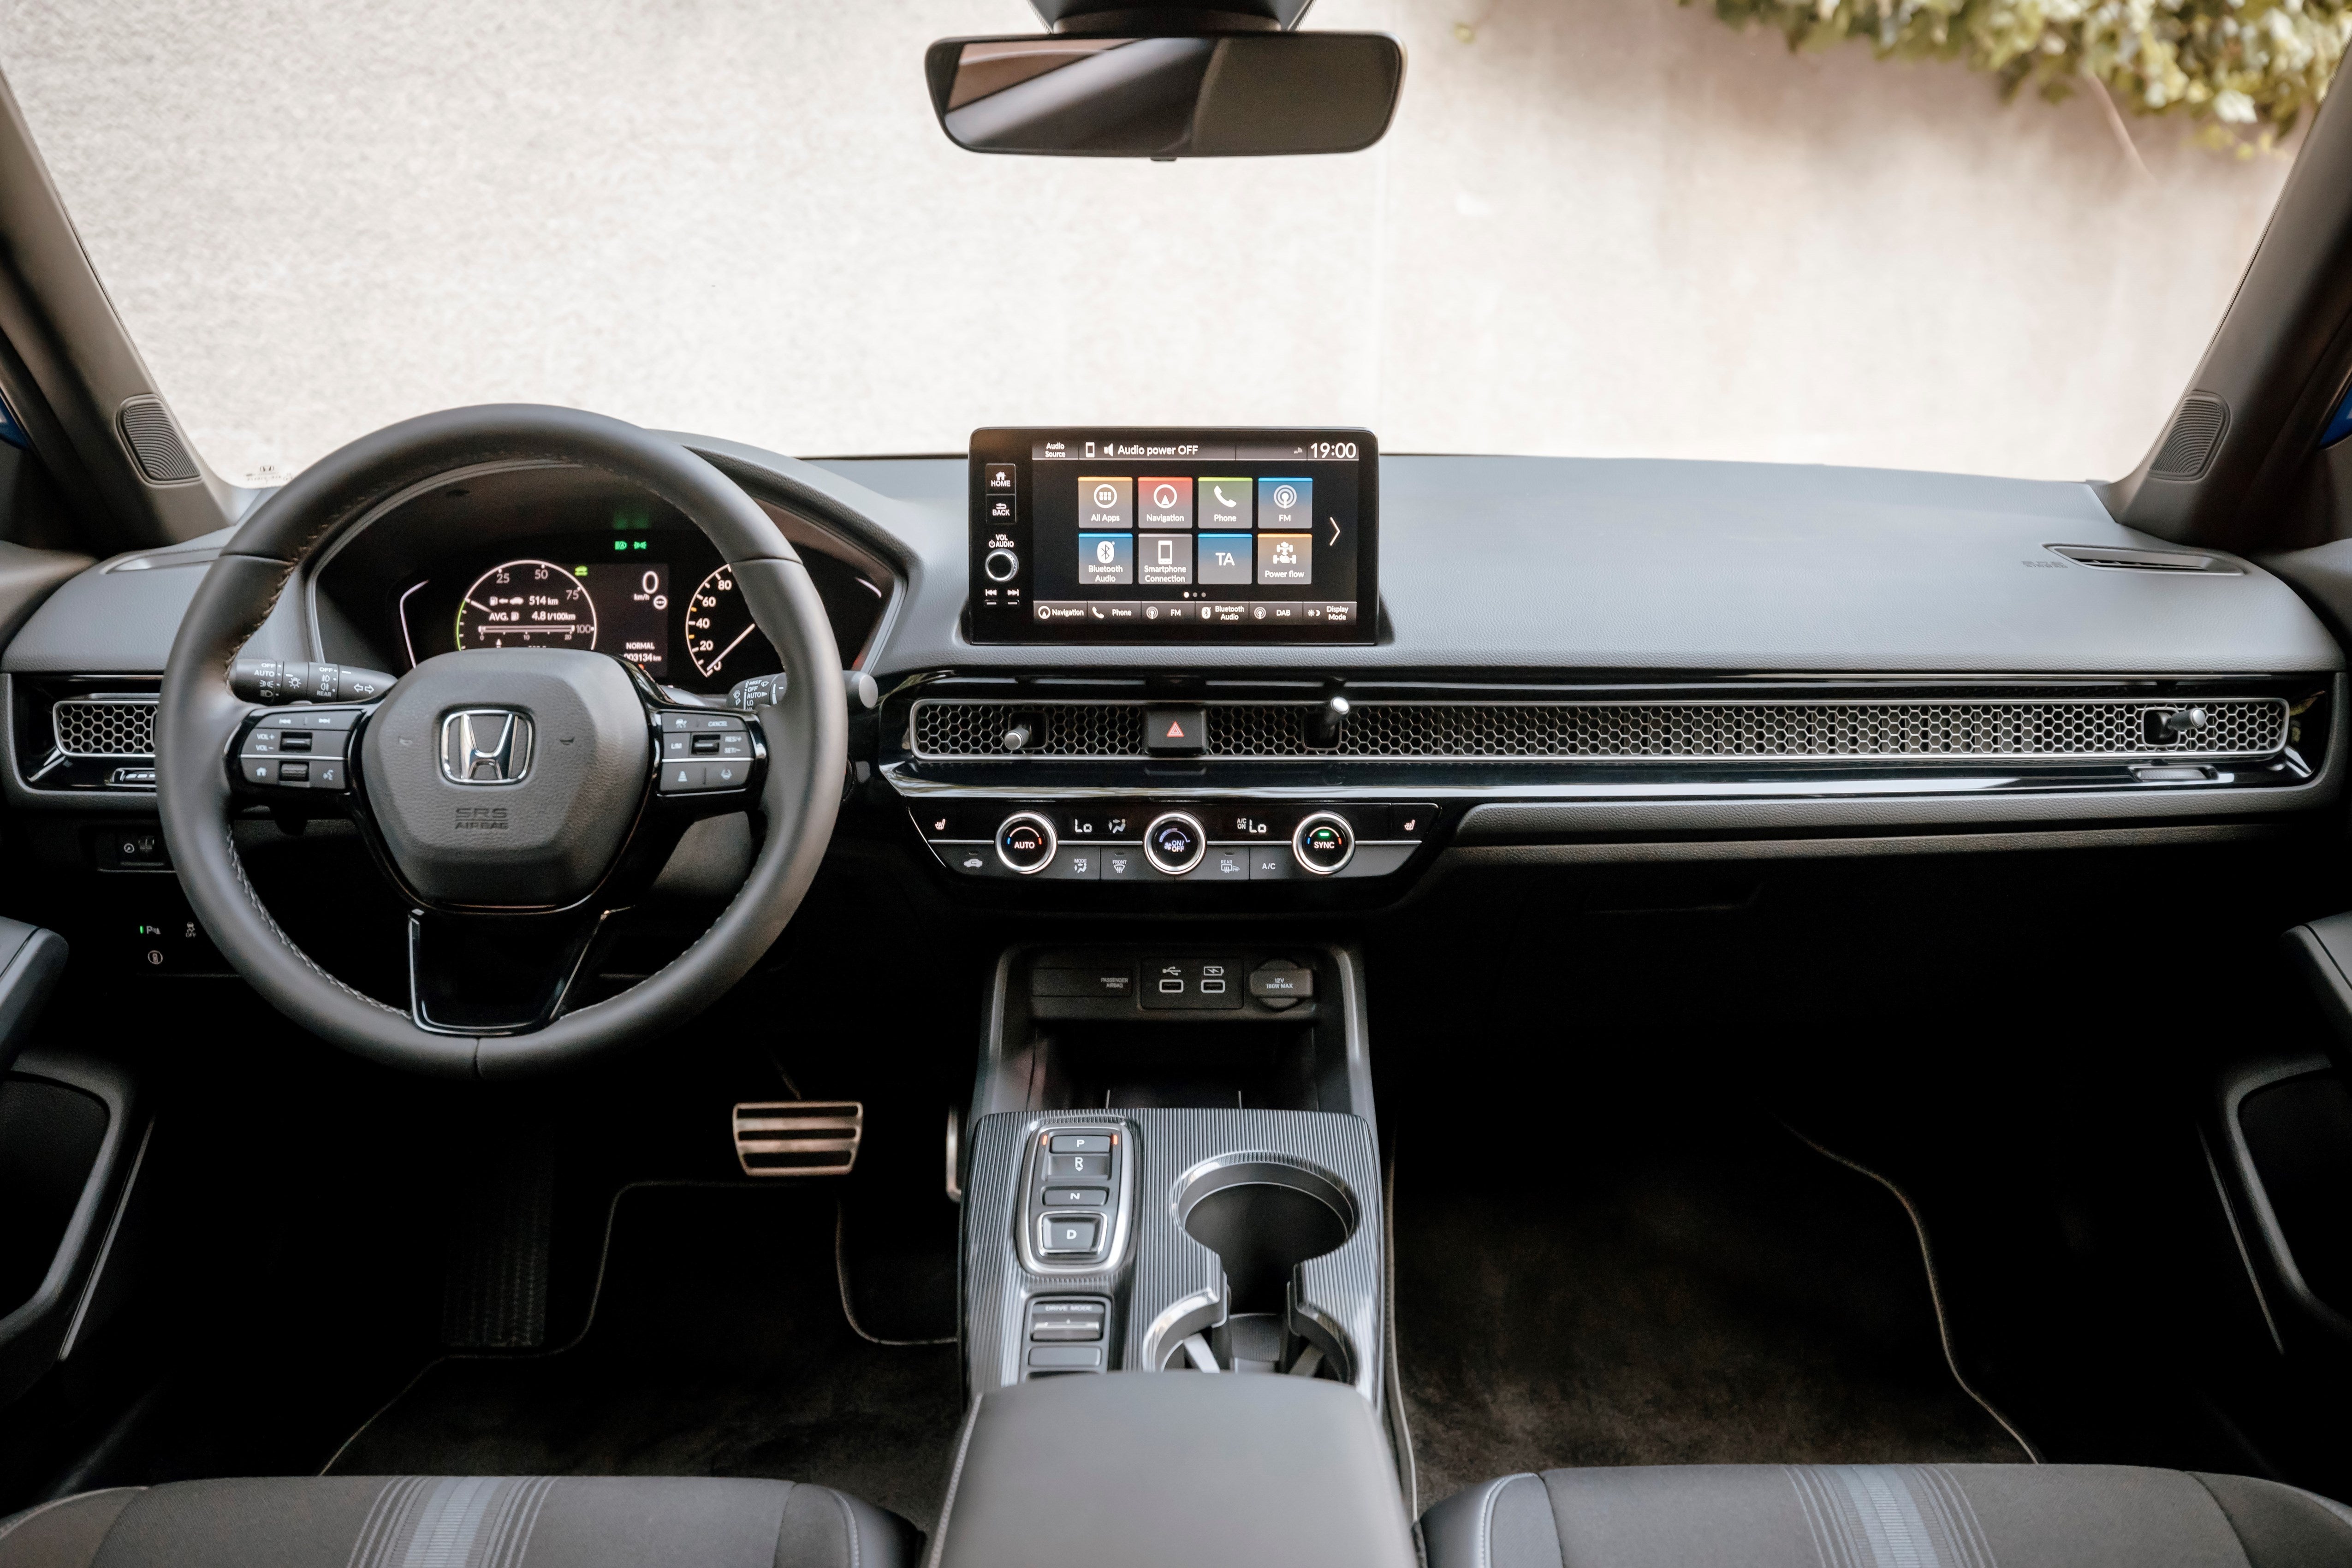 Honda Civic 2022 Review: Cabin